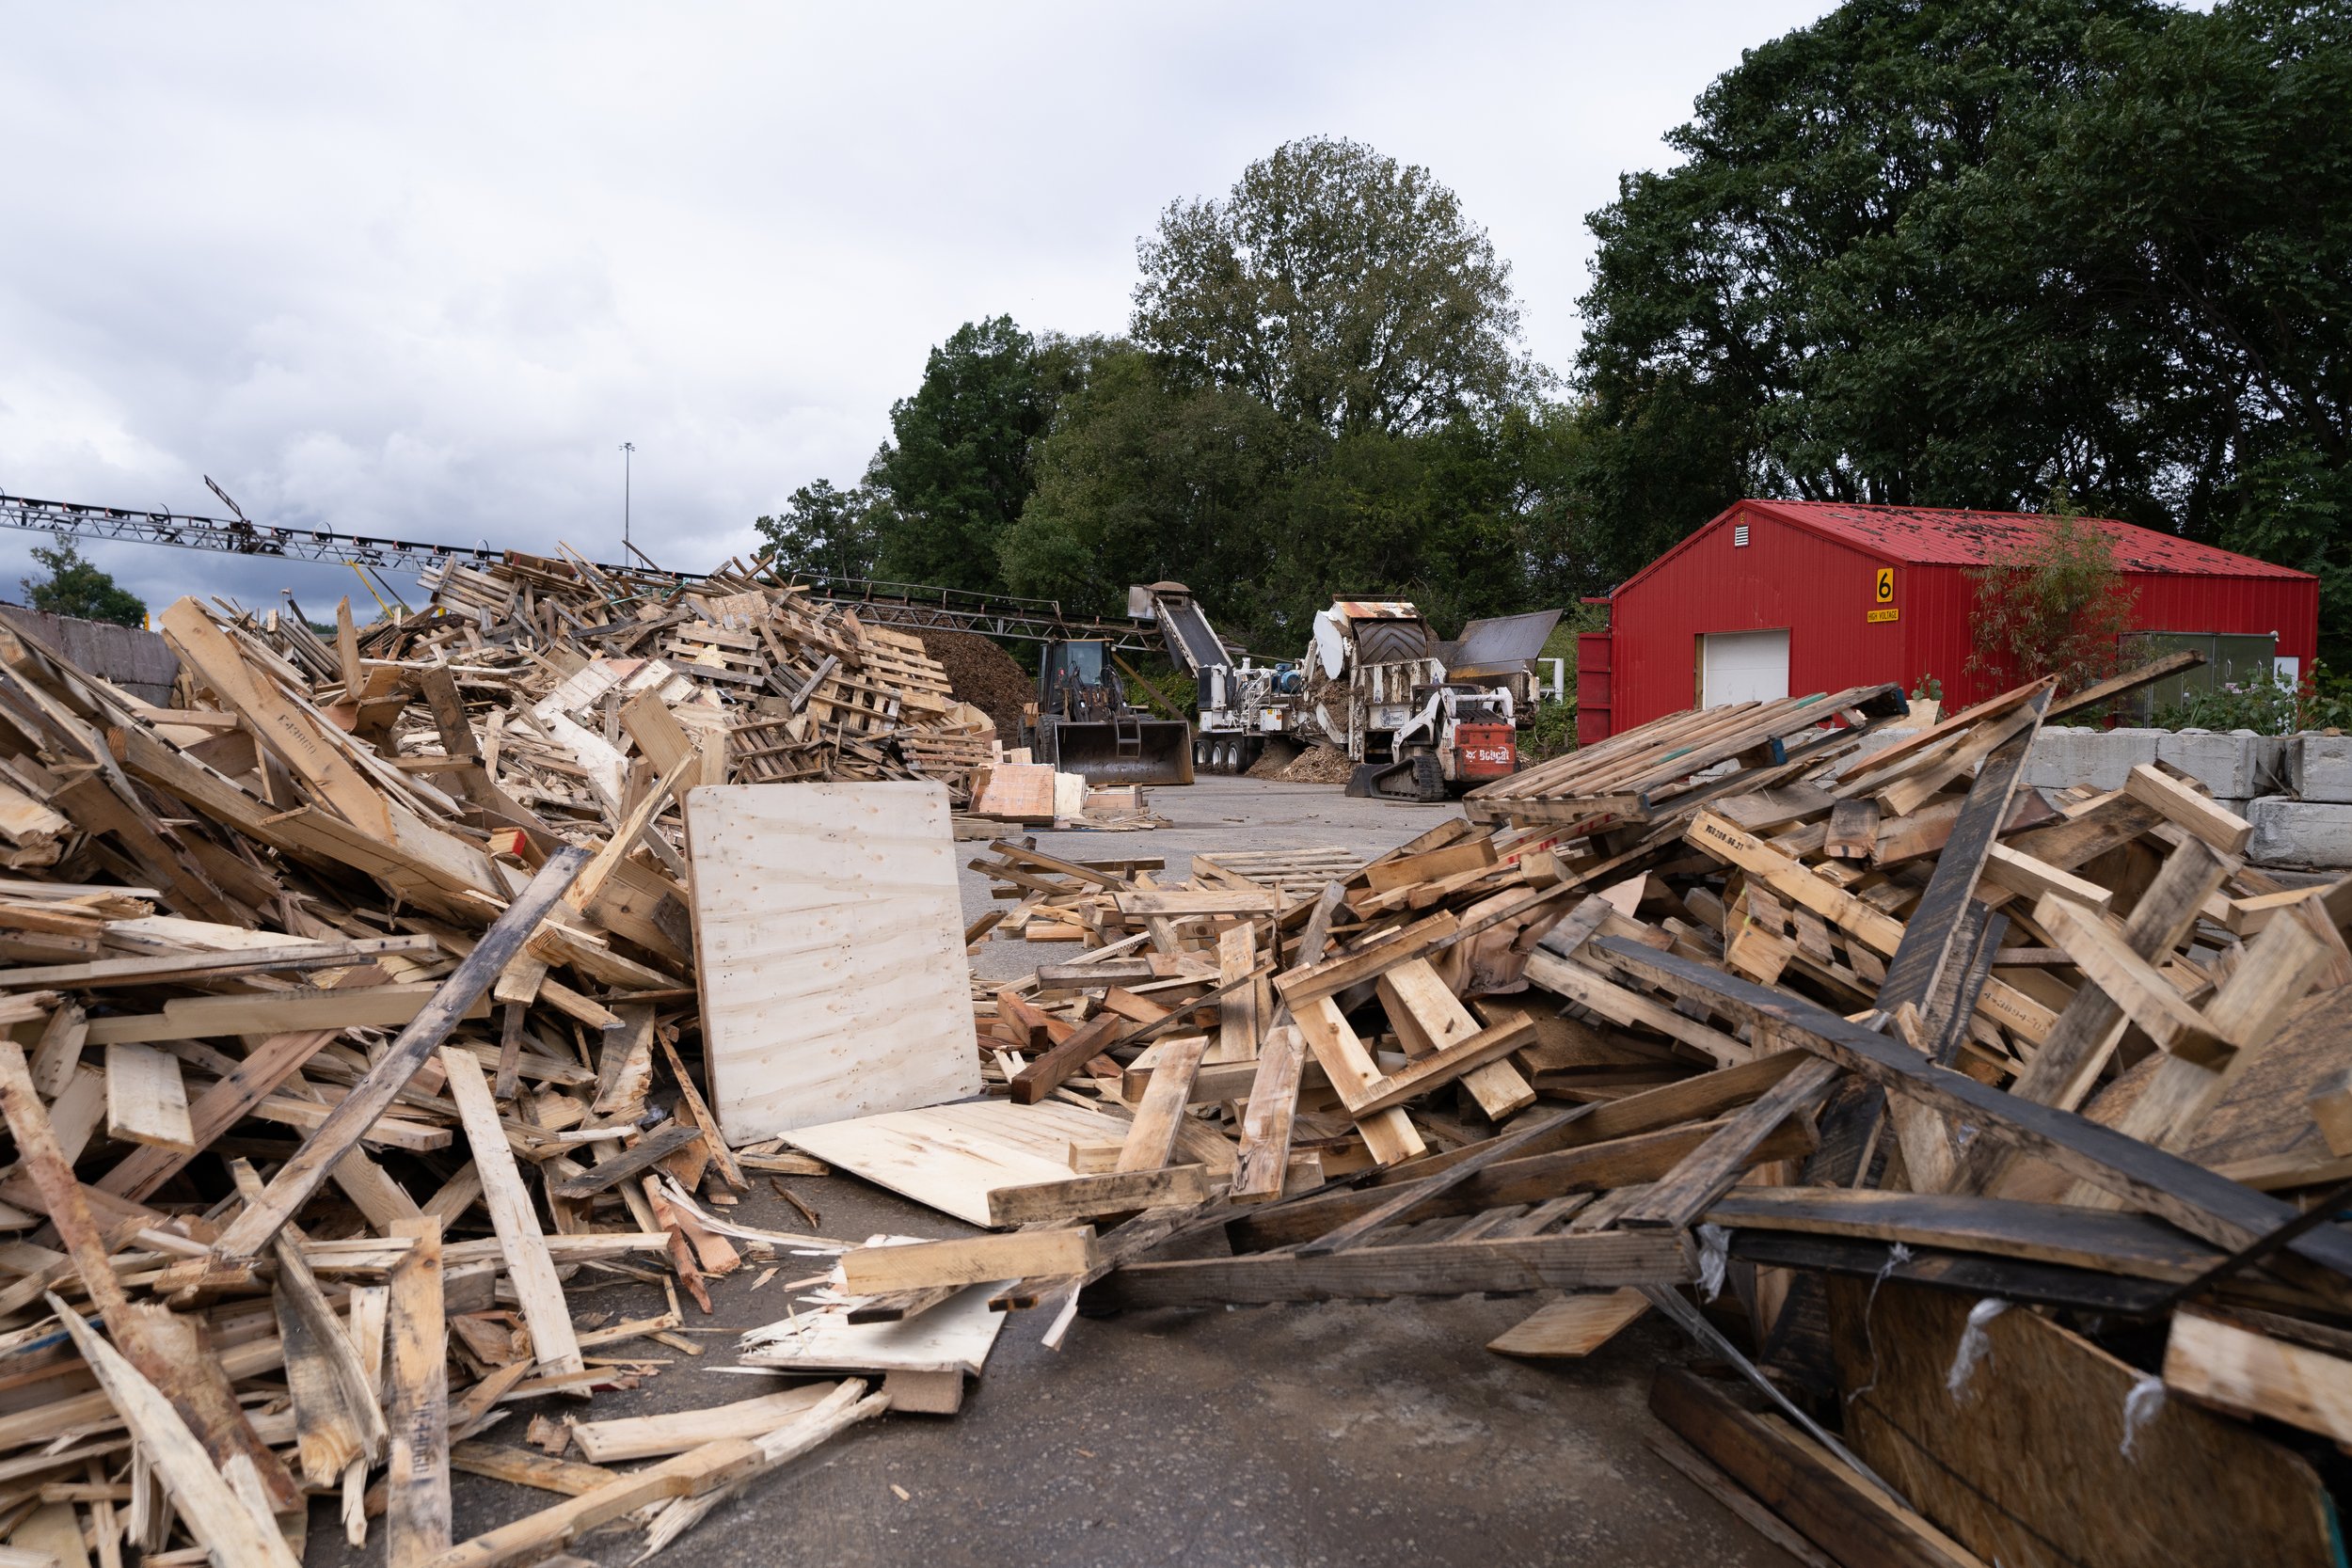 Scrap Wood Removal, Pickup & Disposal